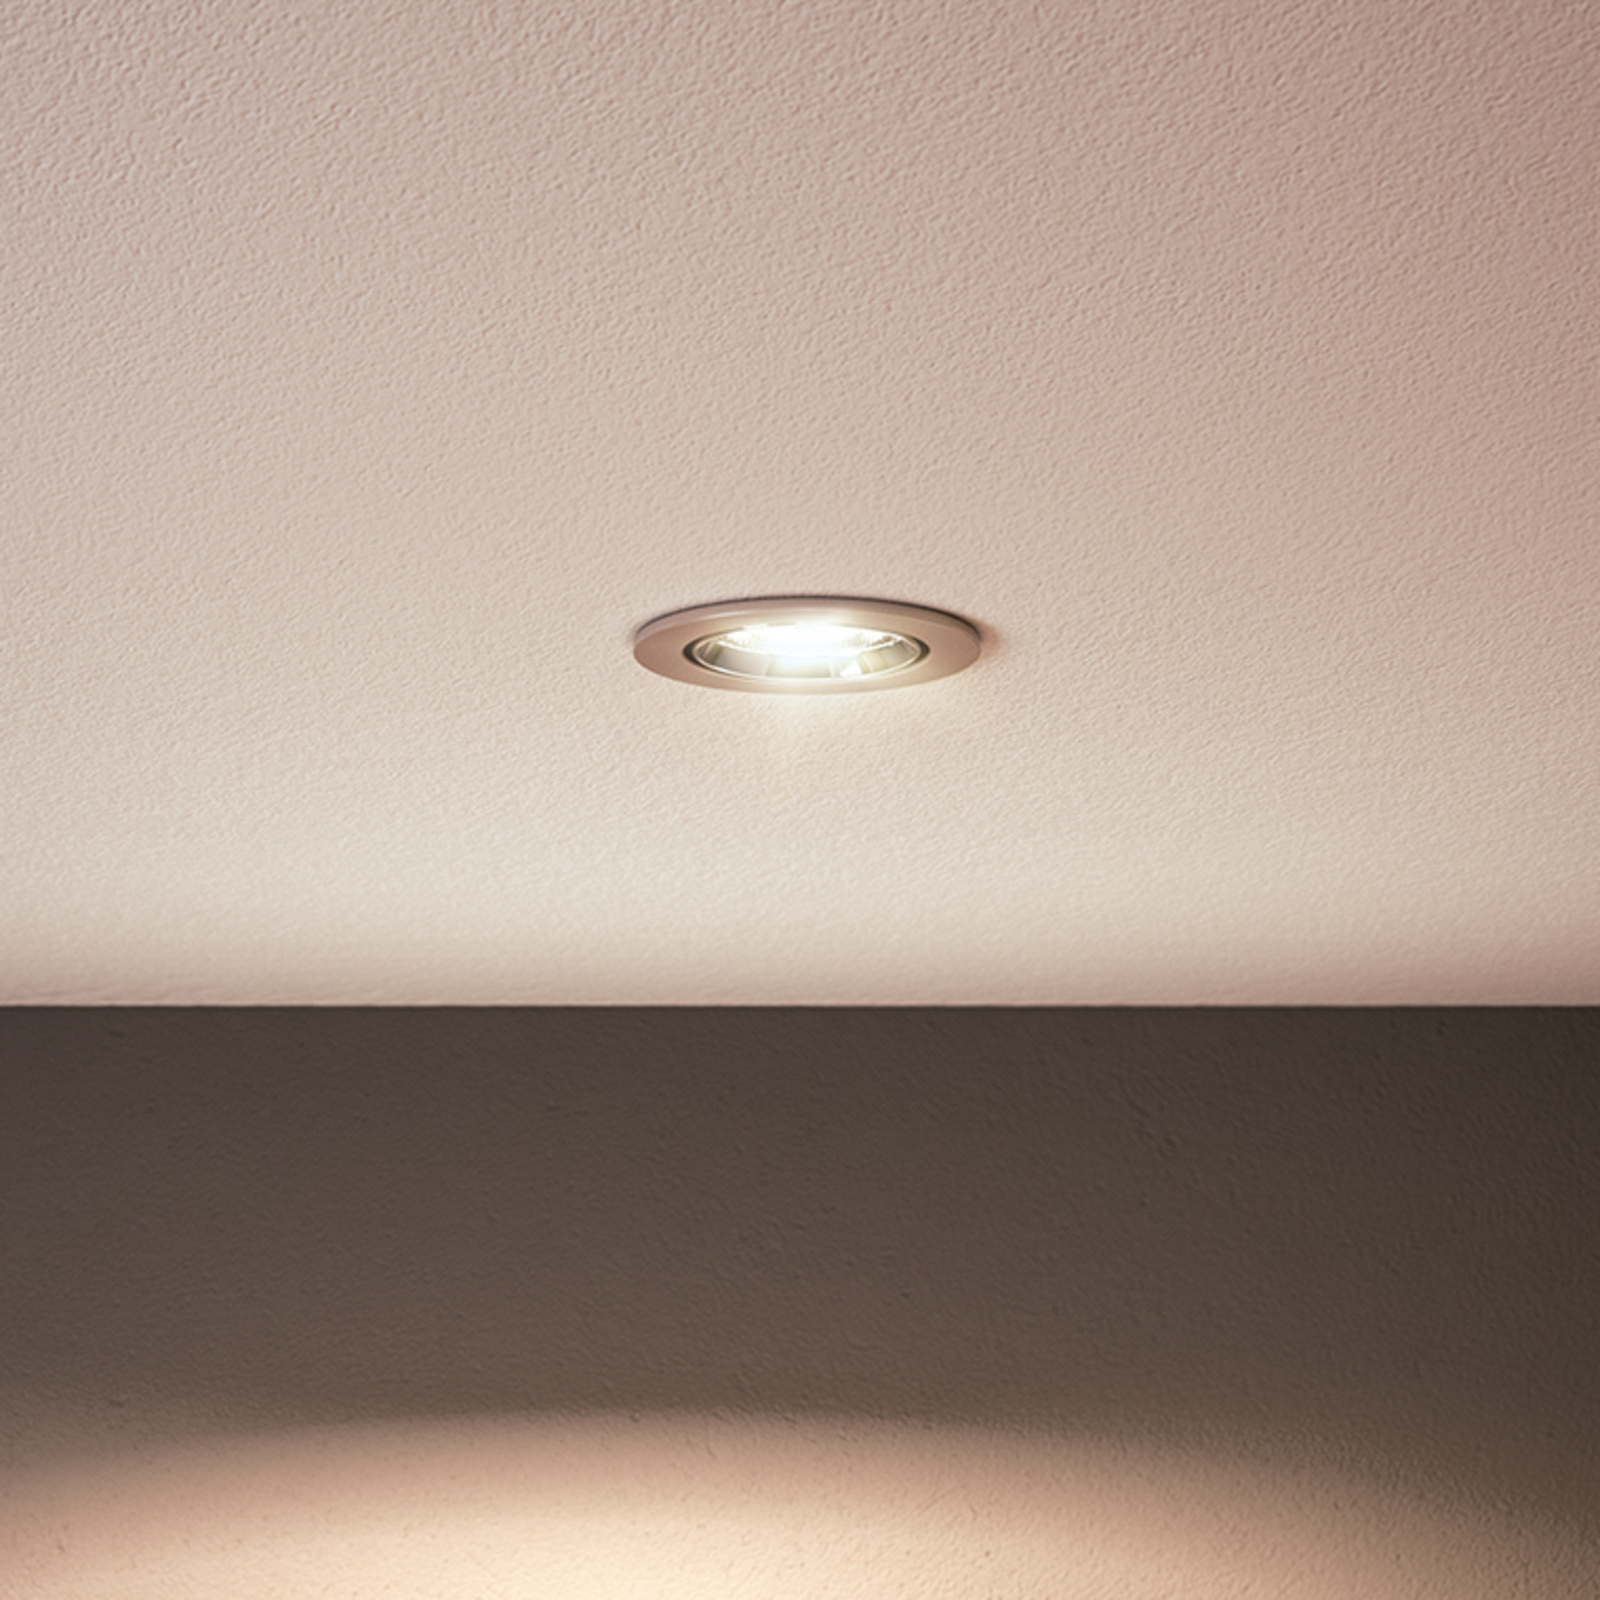 Philips LED-Lampe GU10 4,6W 355lm 827 klar 36° 2er